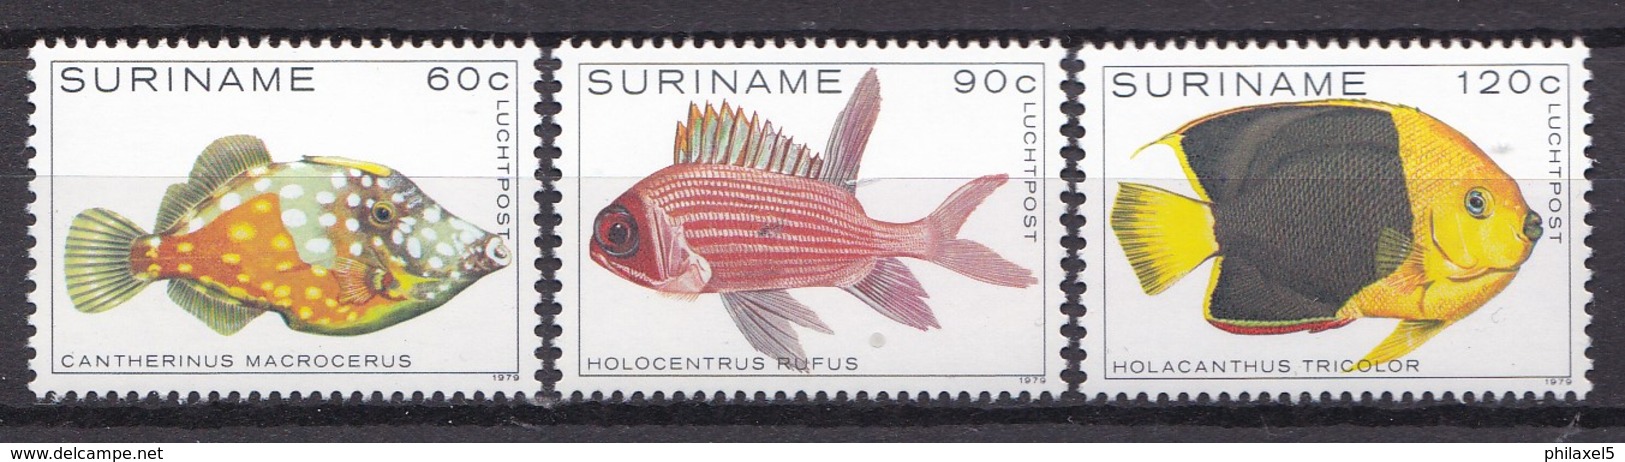 Republiek Suriname - Tropische Vissen - MNH - Zb 177 - 179 Luchtpostzegels - Suriname